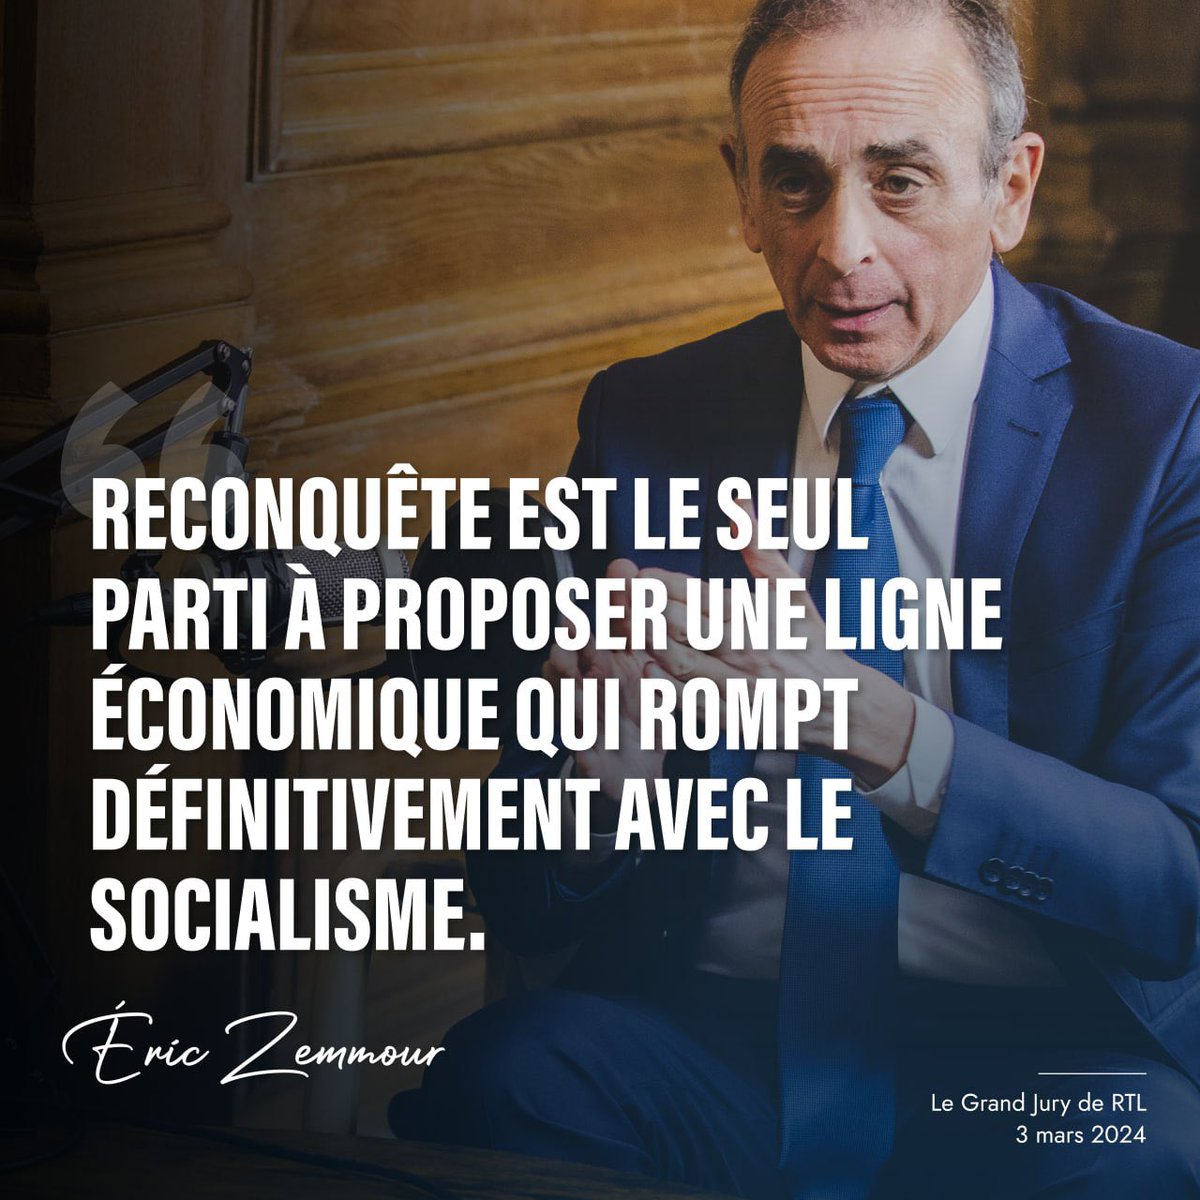 🔴 Éric Zemmour : « Reconquête est le seul parti à proposer une ligne économique qui rompt définitivement avec le socialisme. »

👉 Regardez l’entretien sur YouTube : youtu.be/v3Uc8W2KSPA?fe…

#GrandJury